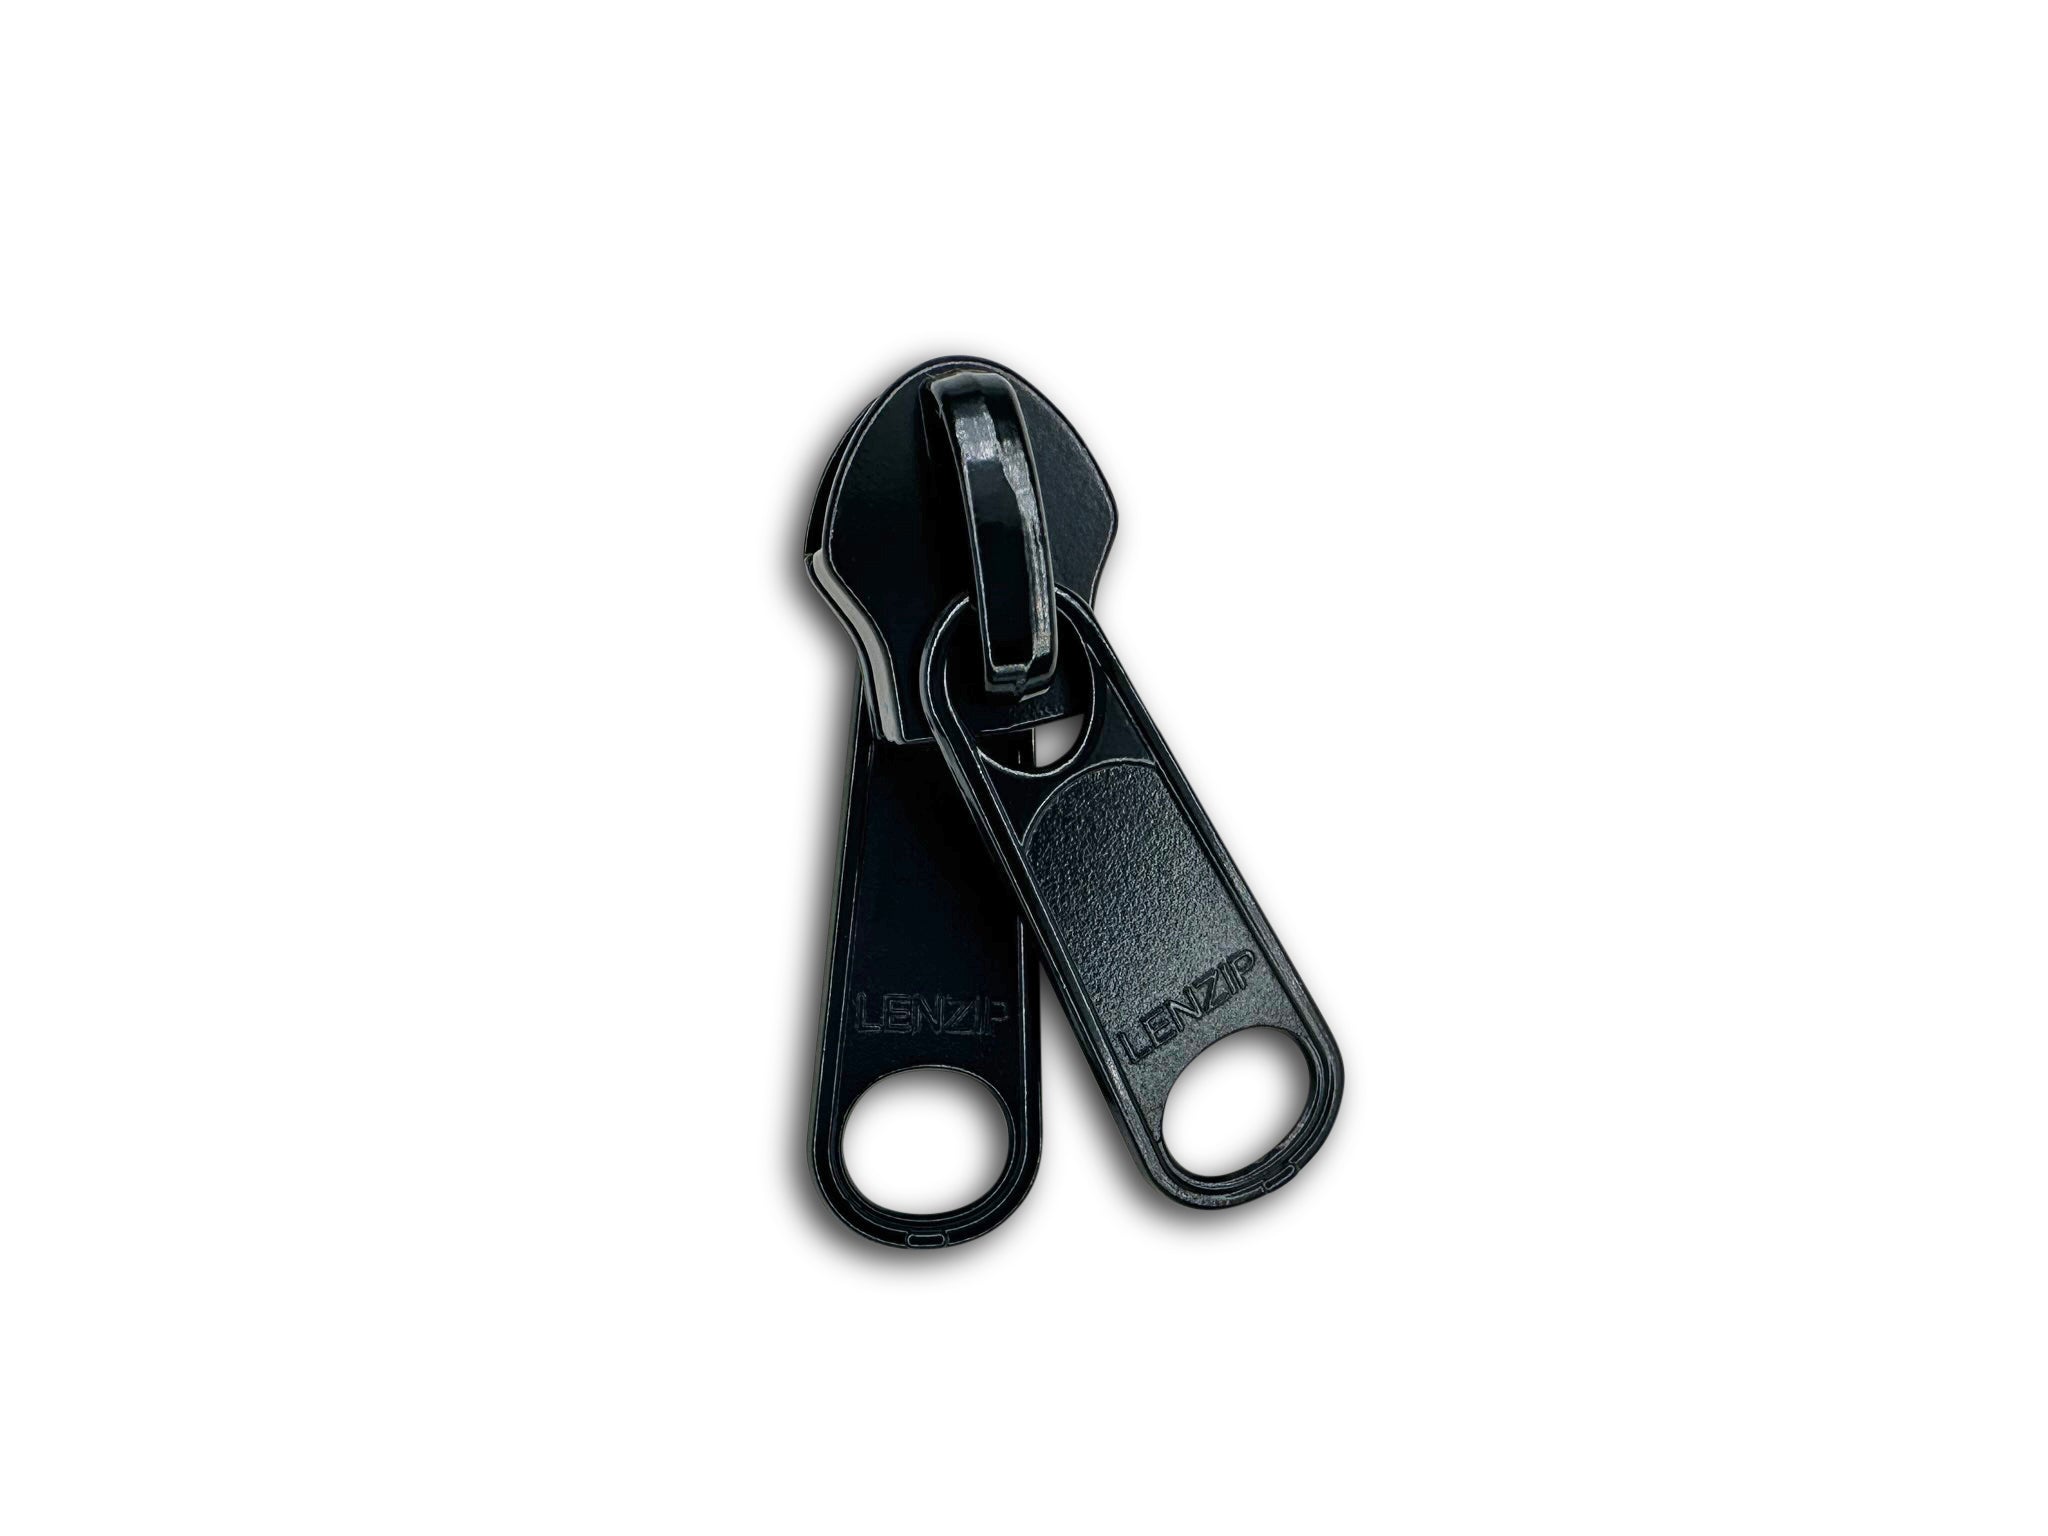 Carhartt 10 Zipper Slider Repair Kit, One Size, Brass 